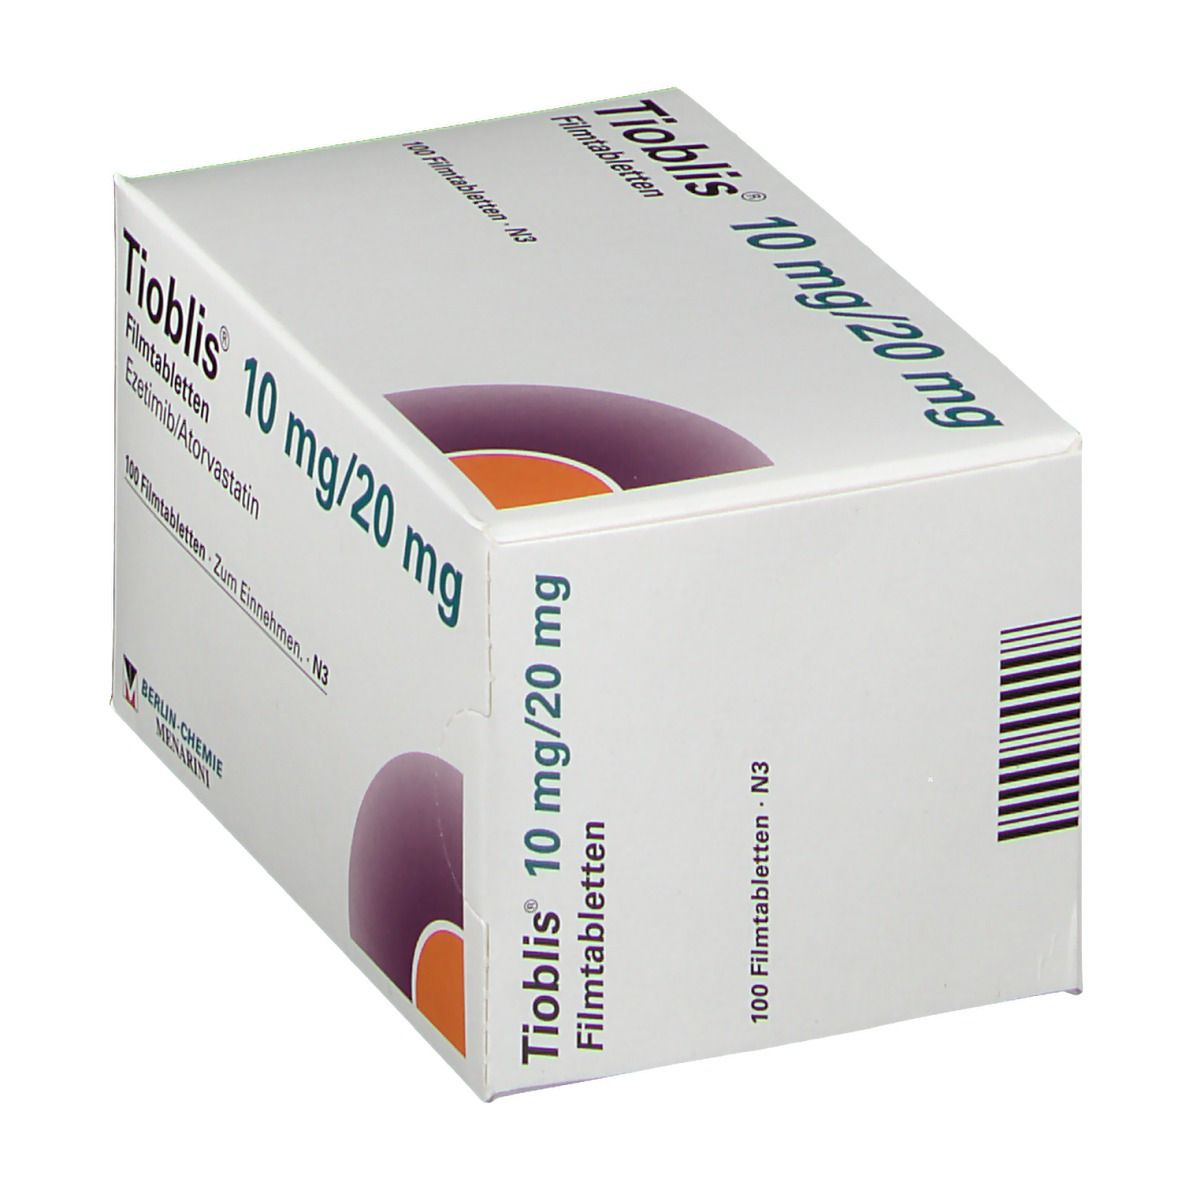 Tioblis® 10 mg/20 mg